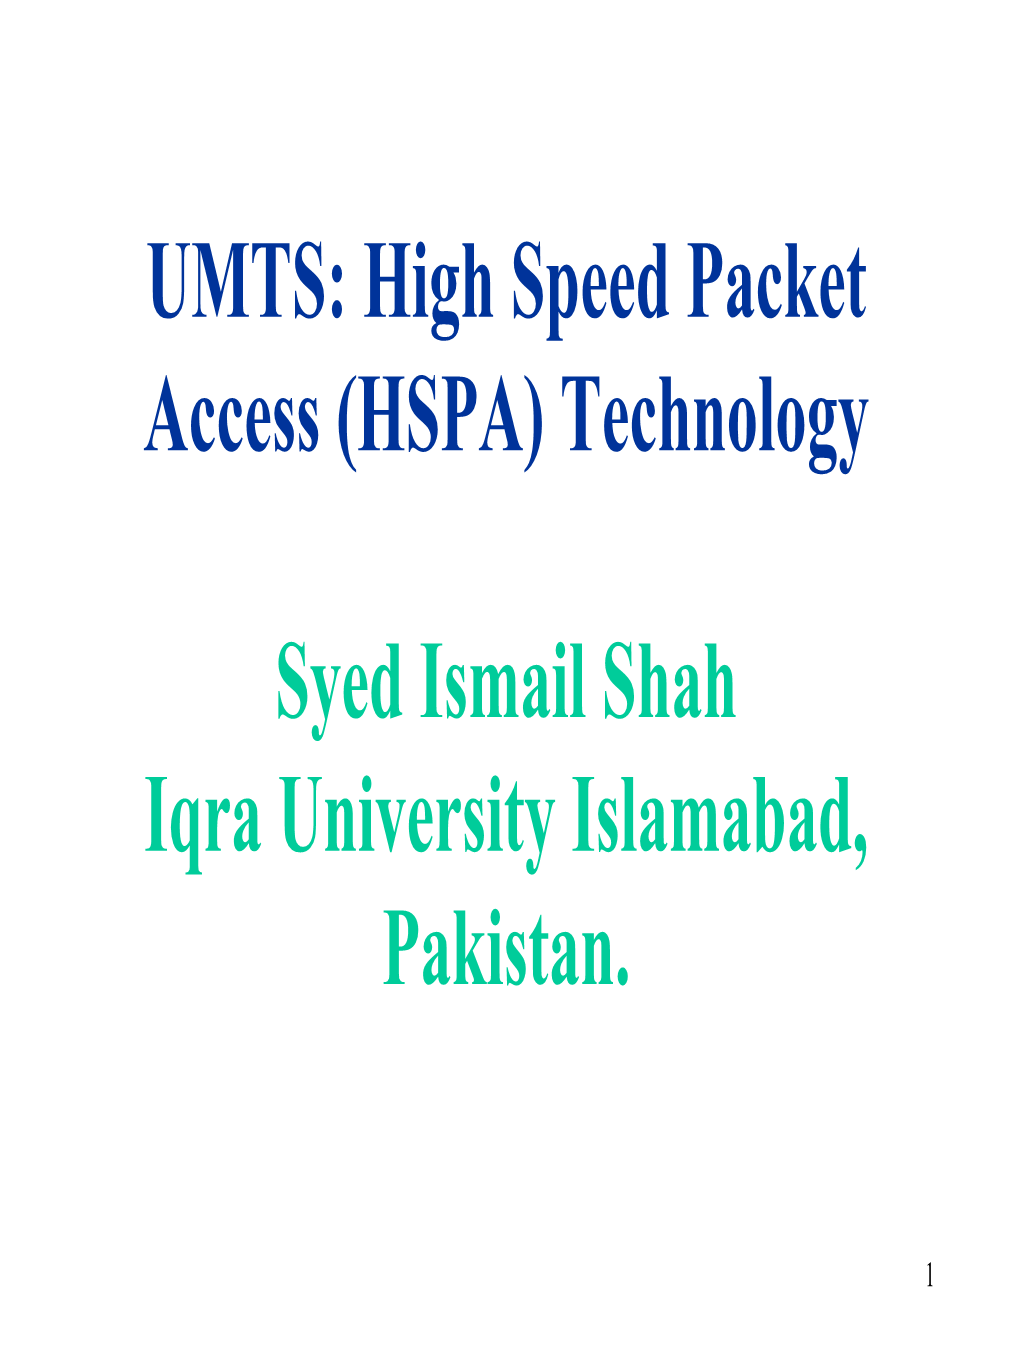 UMTS: High Speed Packet Access (HSPA) Technology